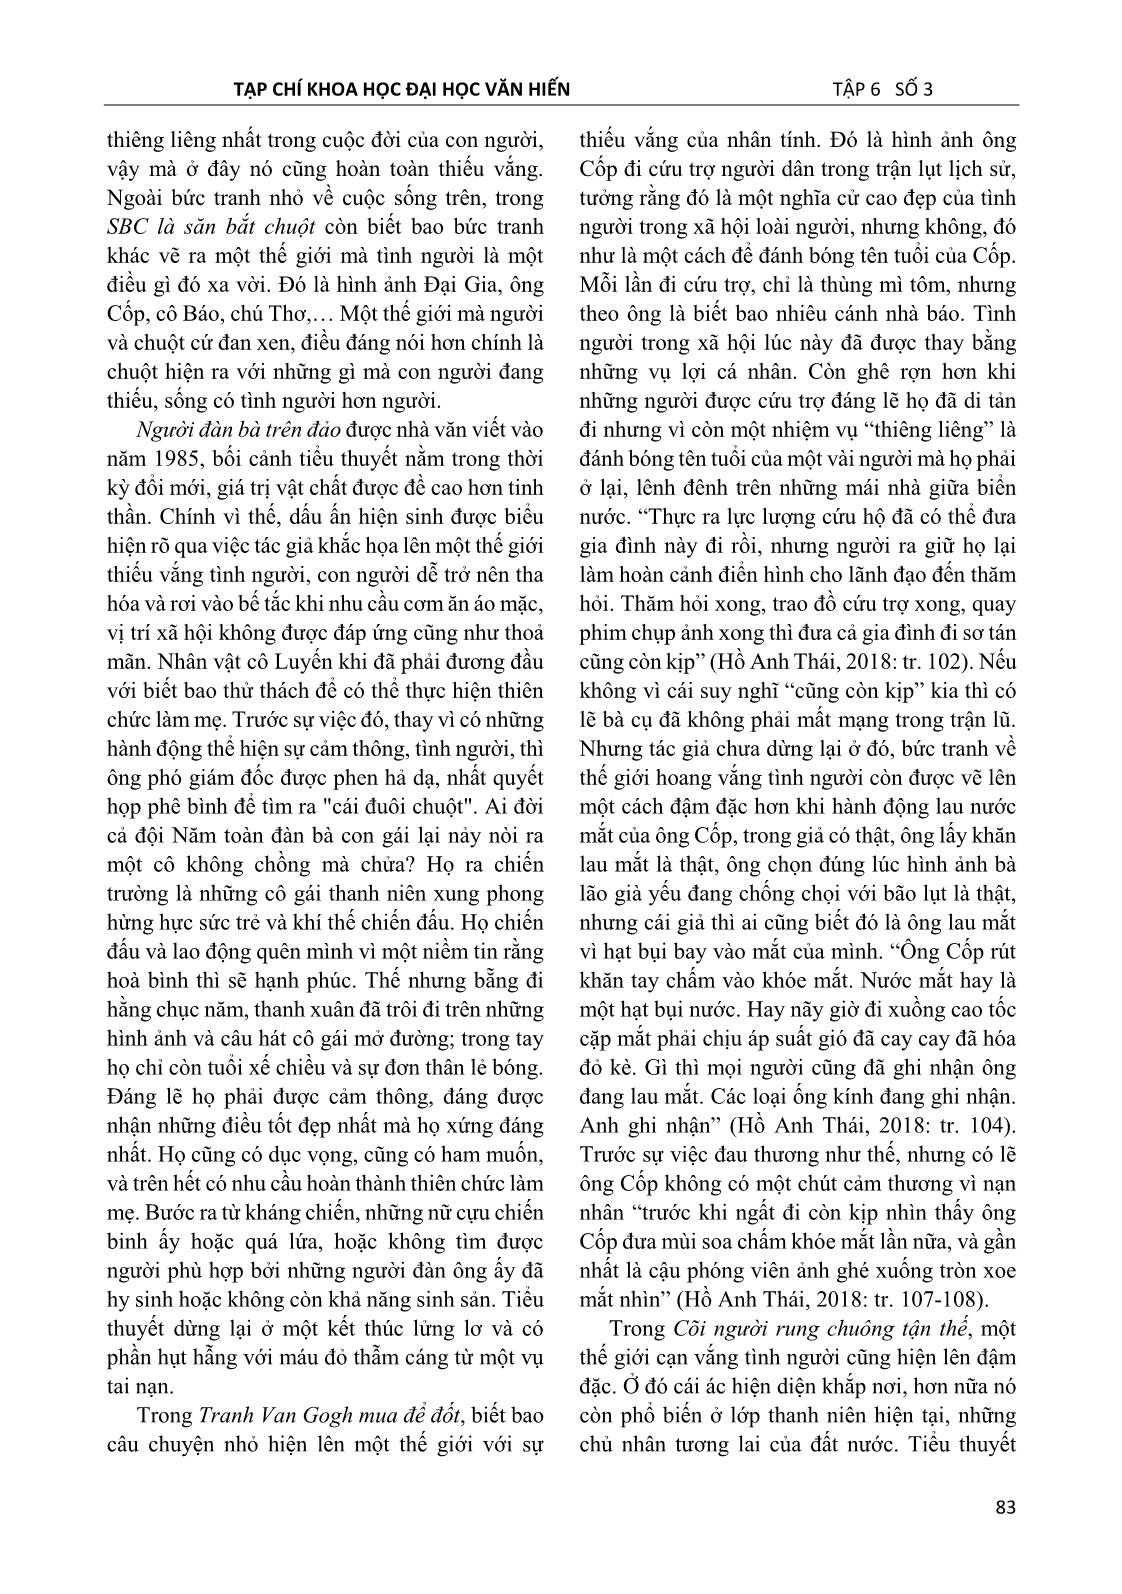 Dấu ấn hiện sinh trong tiểu thuyết Hồ Anh Thái nhìn từ cảm quan hiện thực trang 8